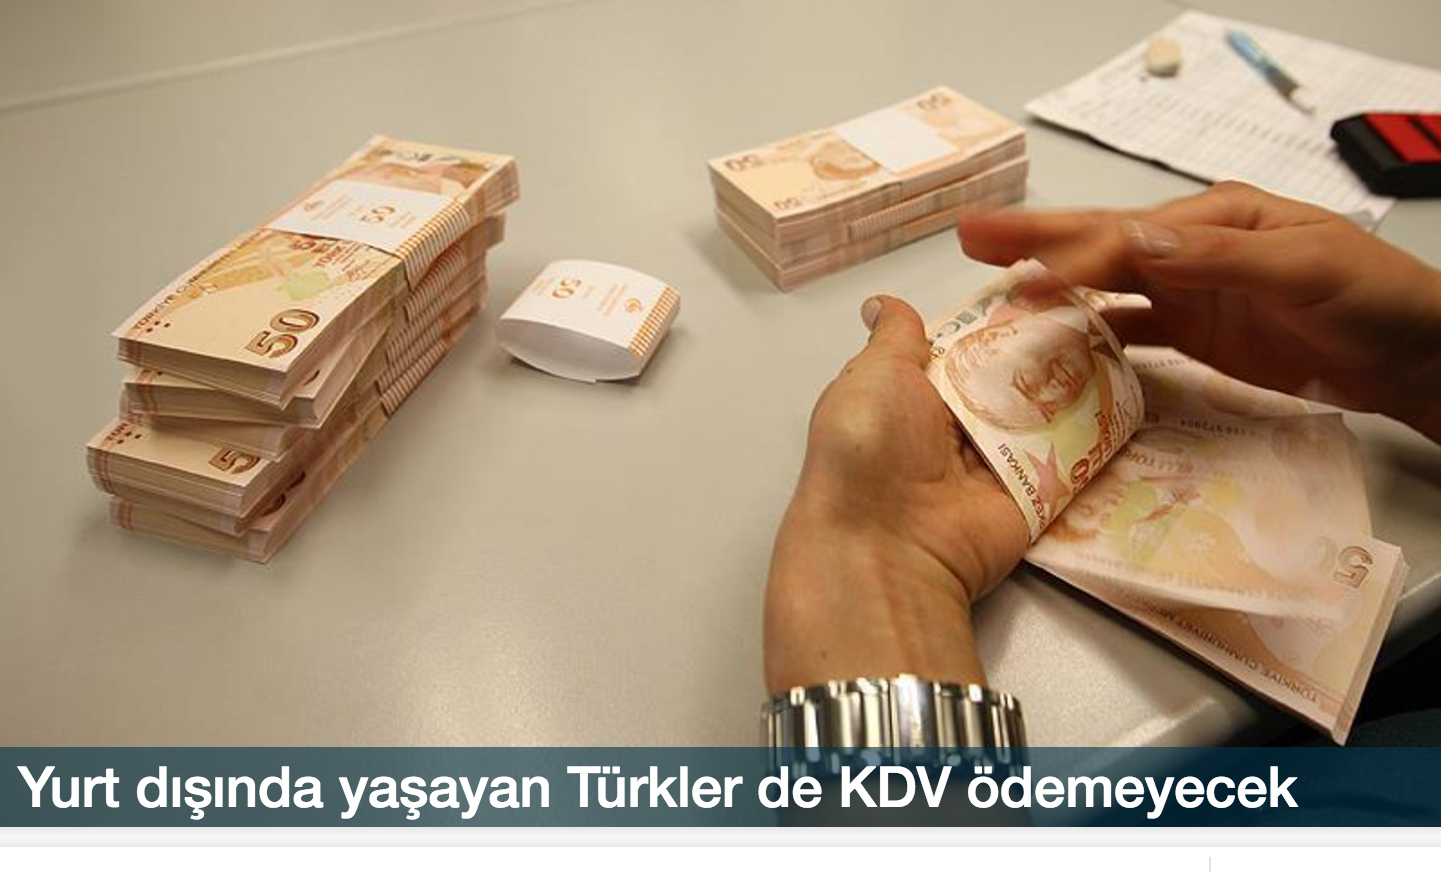 Yurt dışında yaşayan Türkler, Türkiye'de aldıkları ilk konut ve işyeri için KDV ödemeyecek